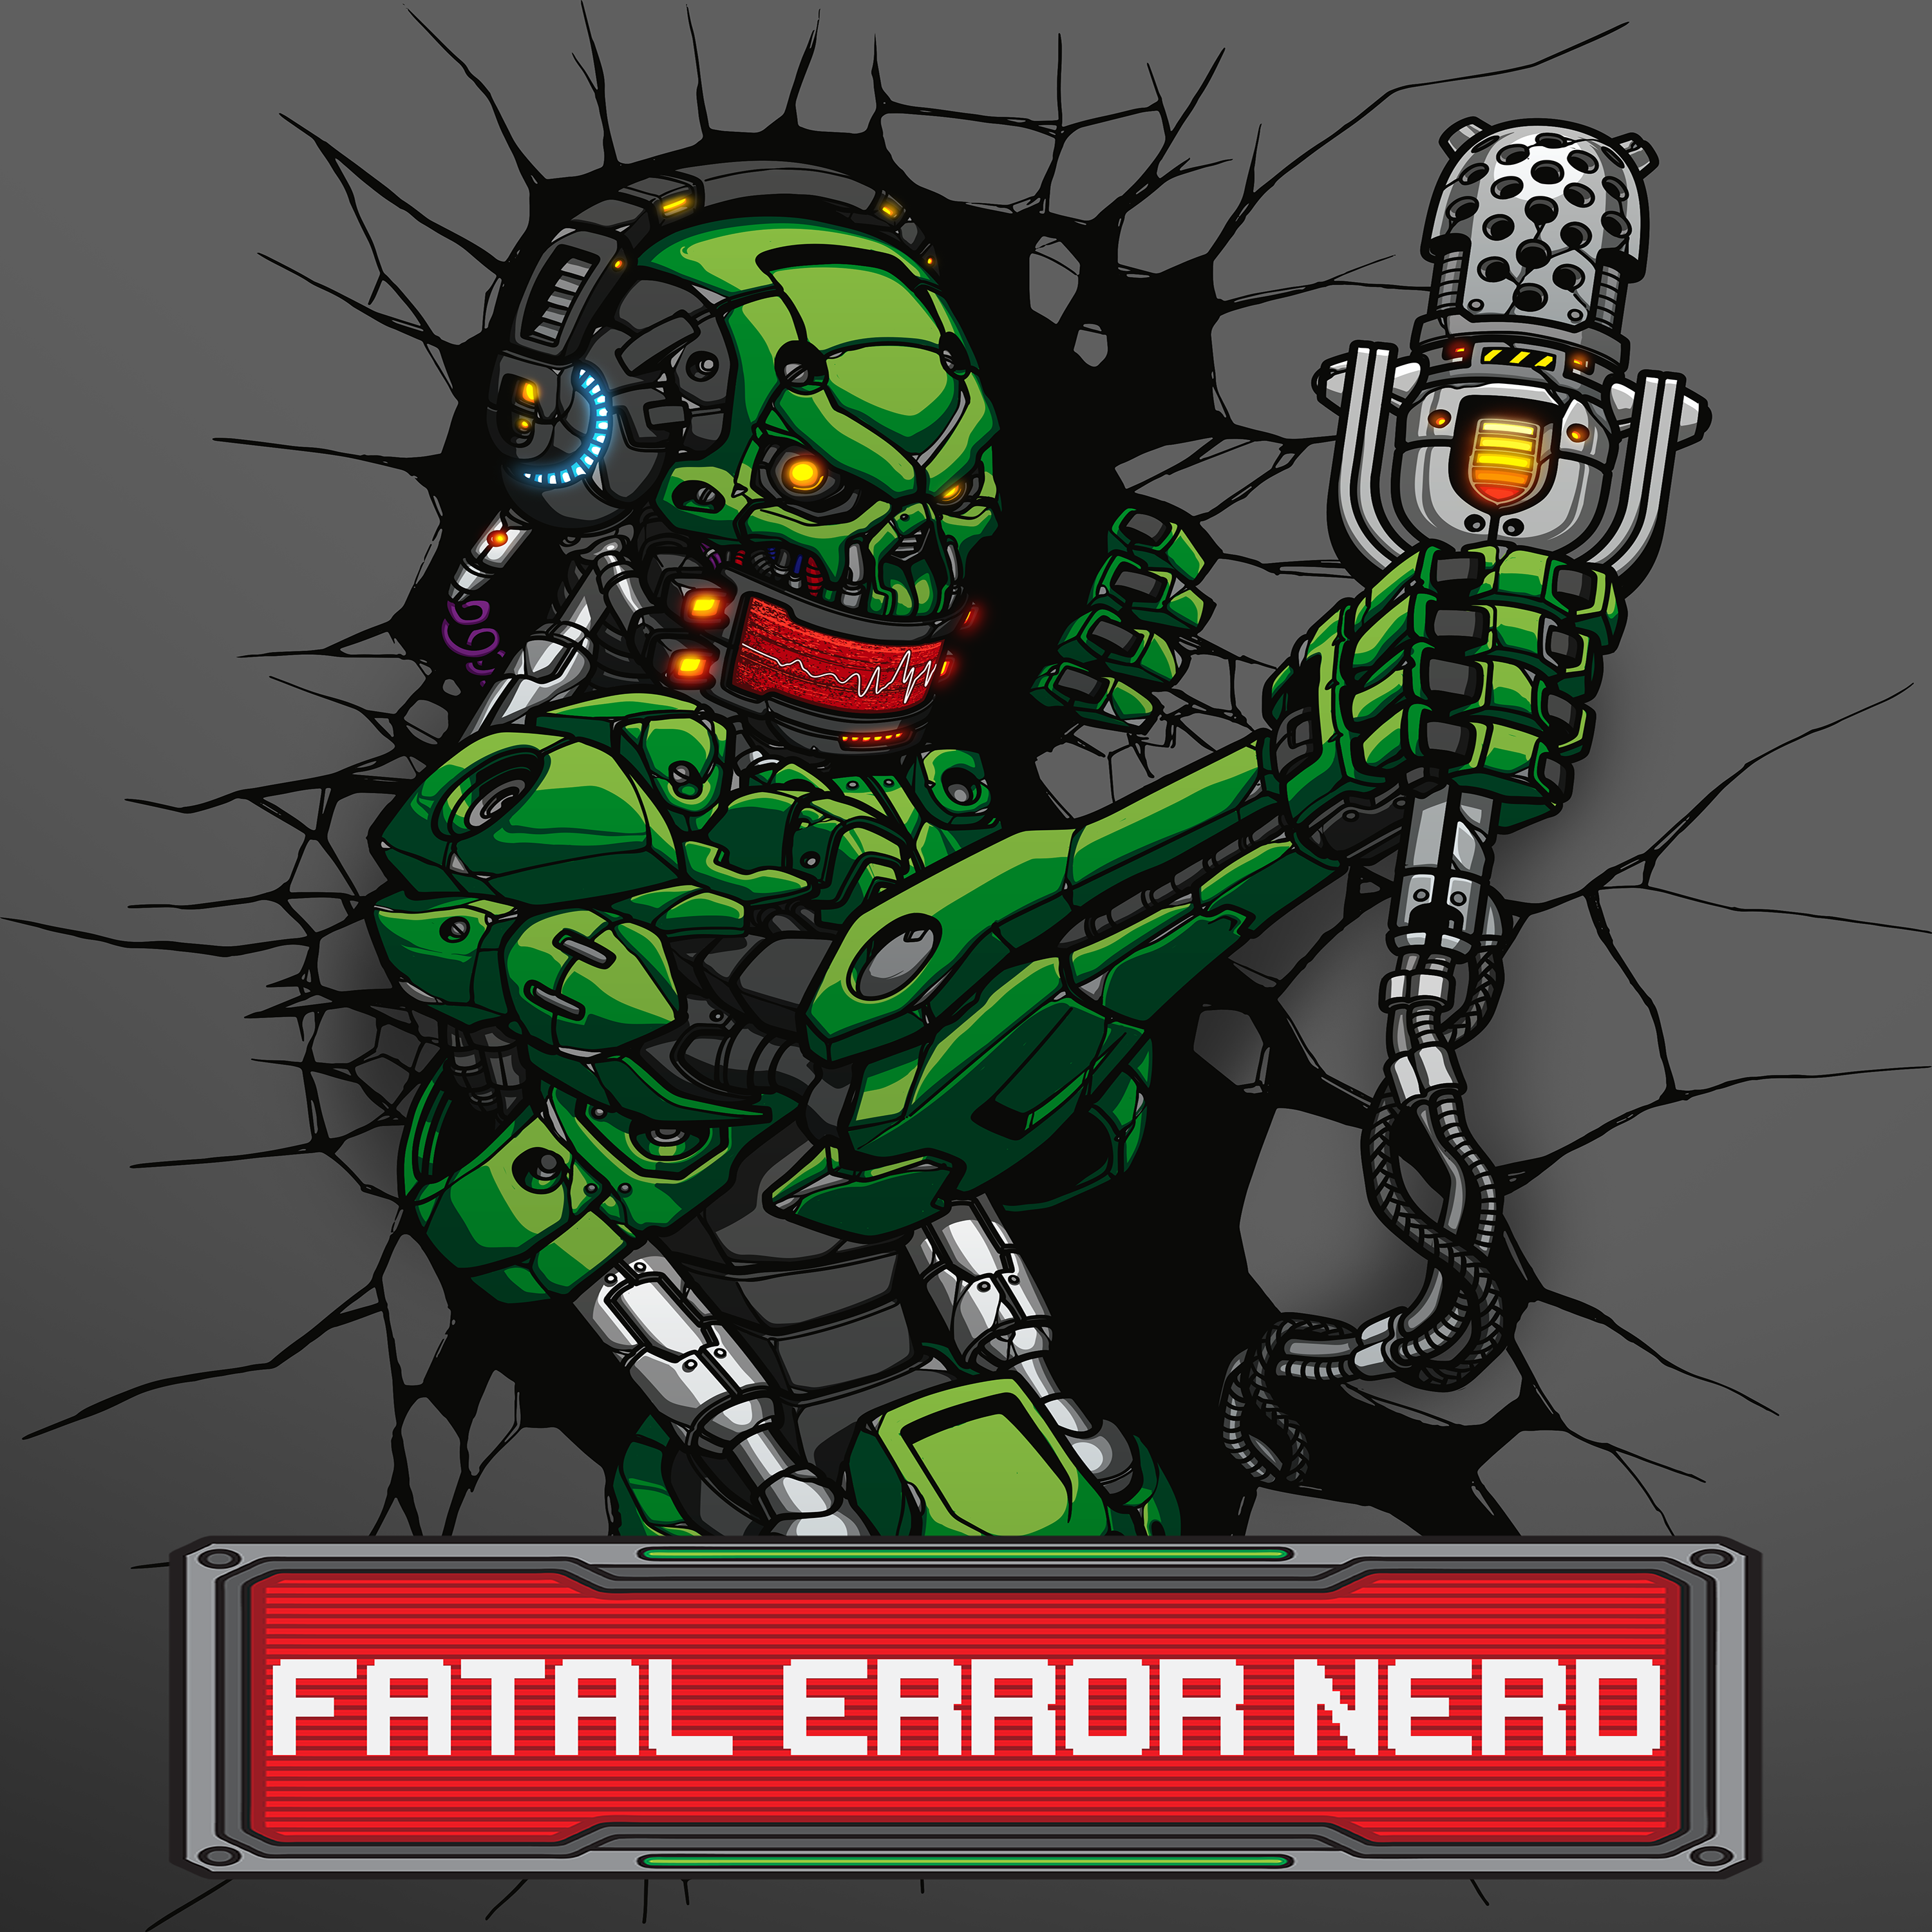 Fatal Error Nerd